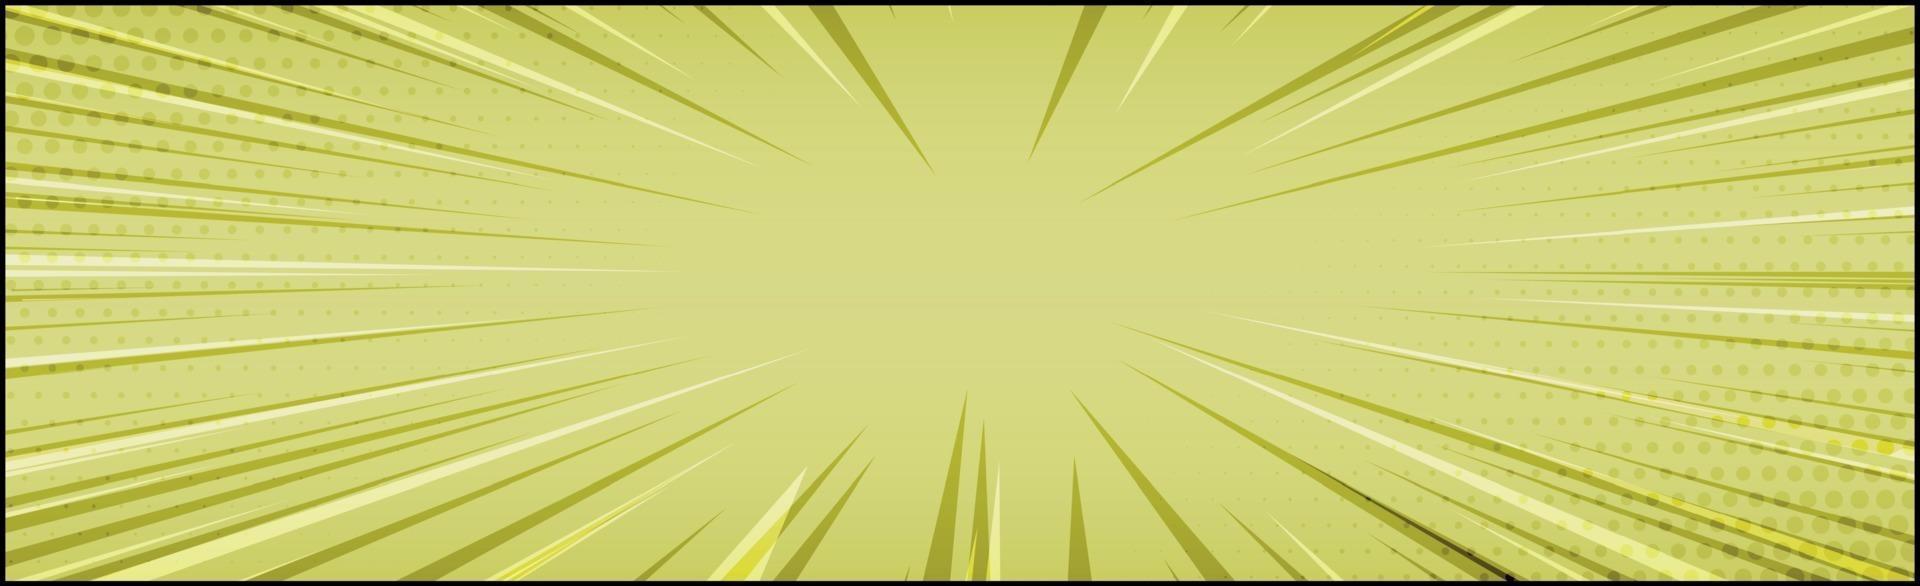 zoom comico giallo panoramico con linee - vettore